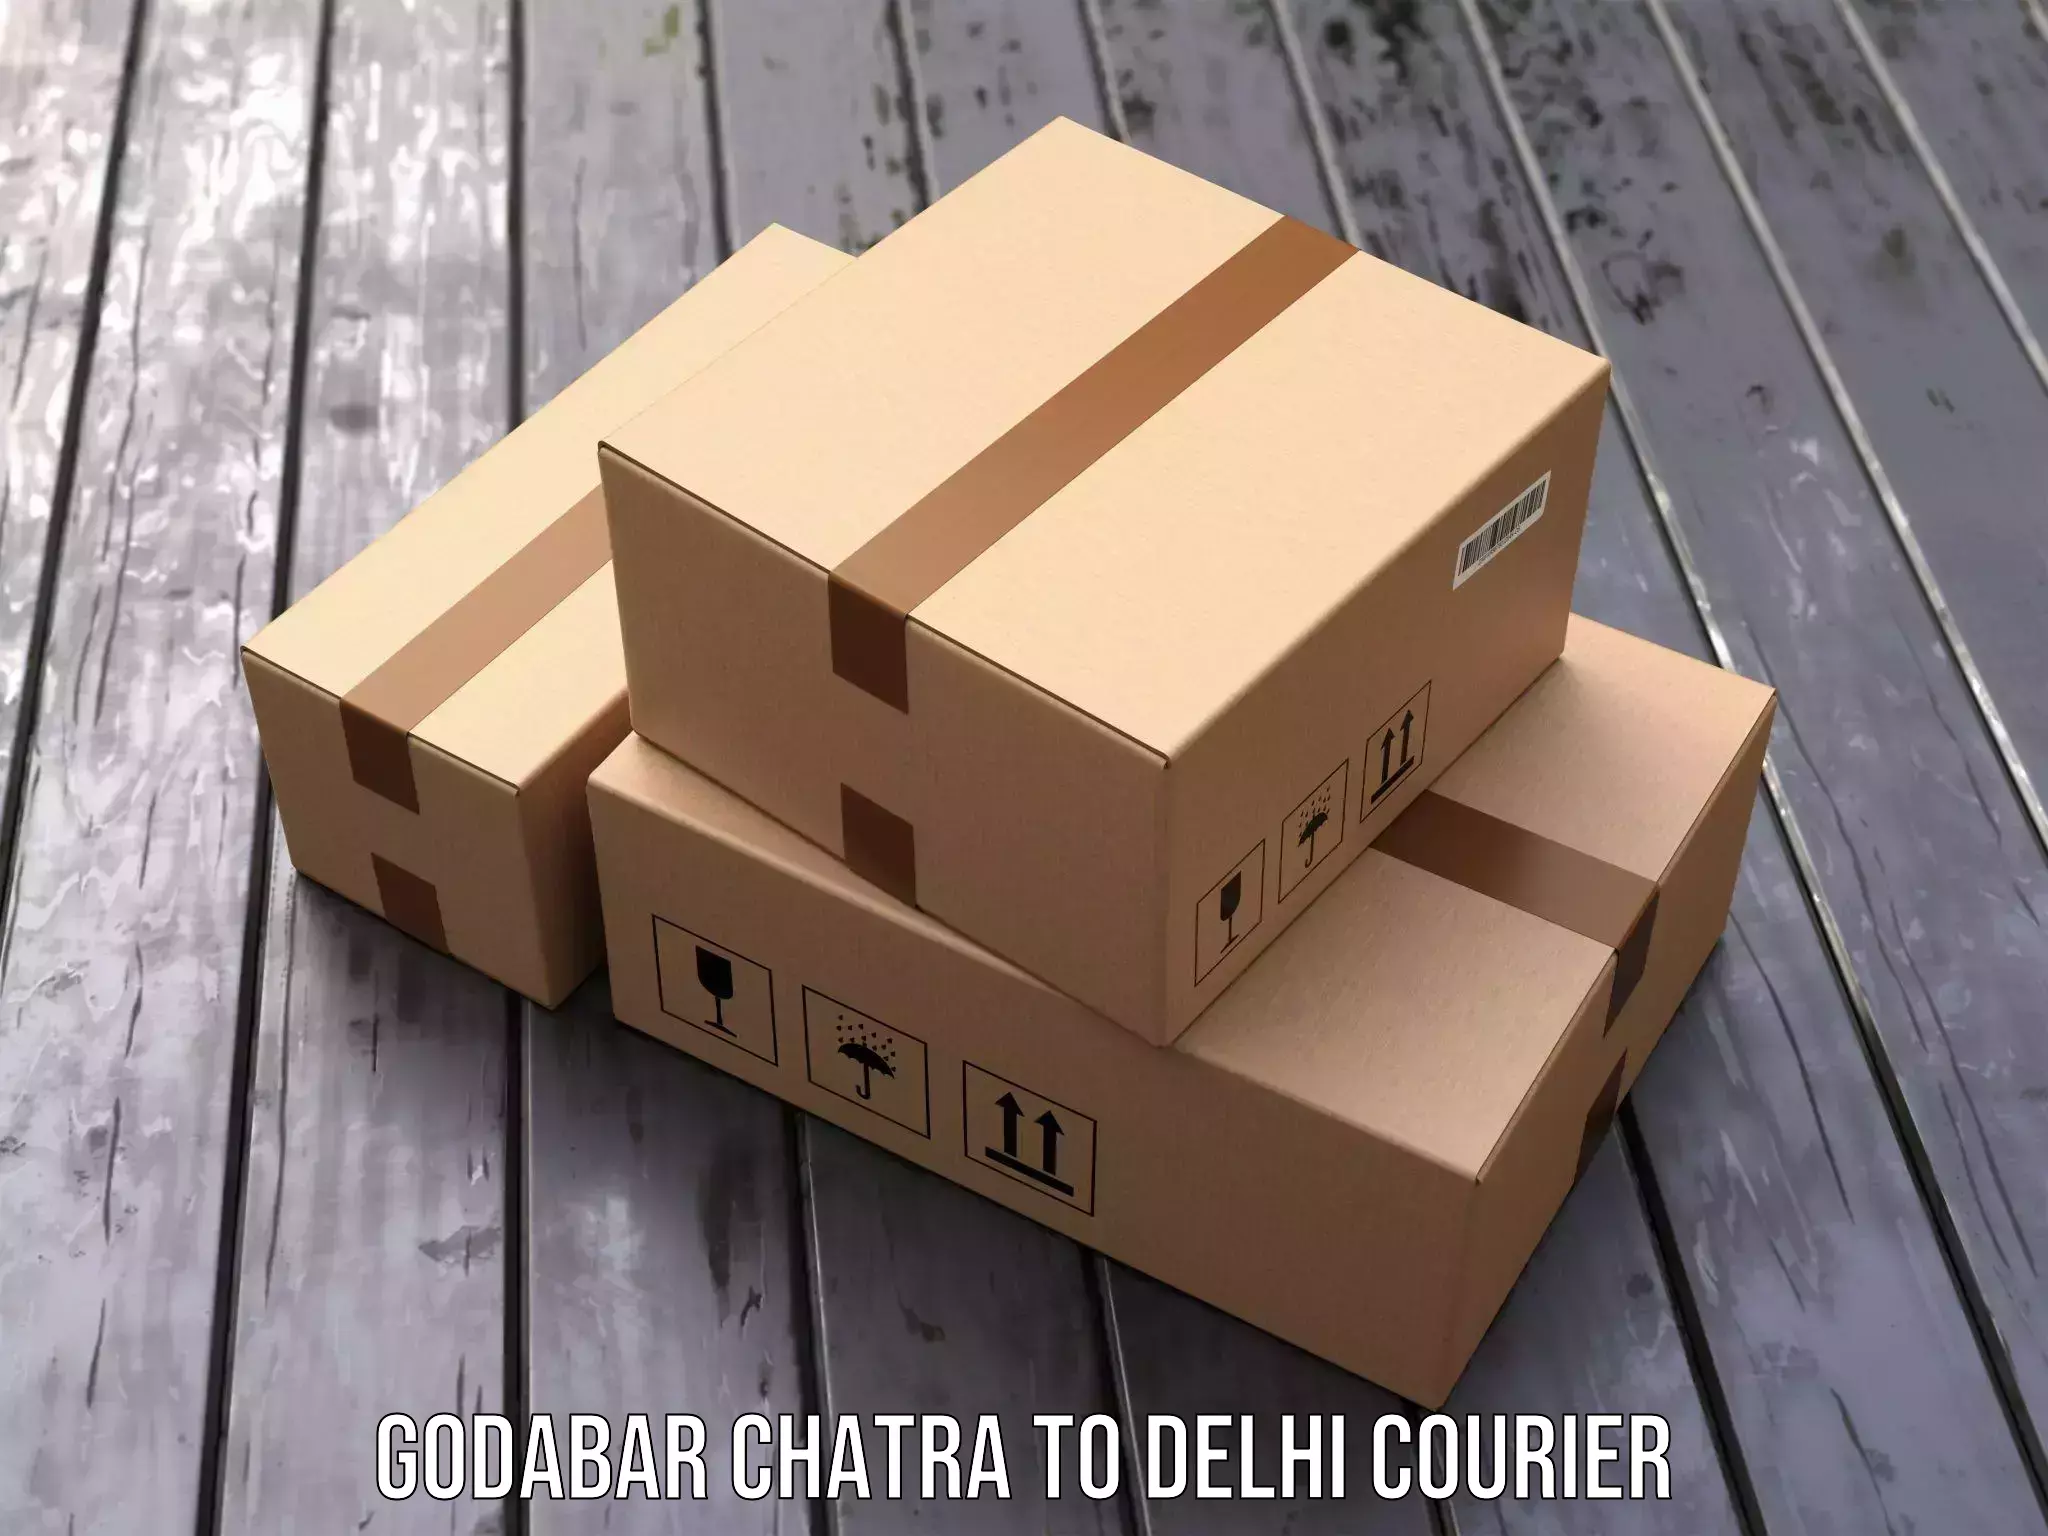 Comprehensive delivery network Godabar Chatra to Sansad Marg